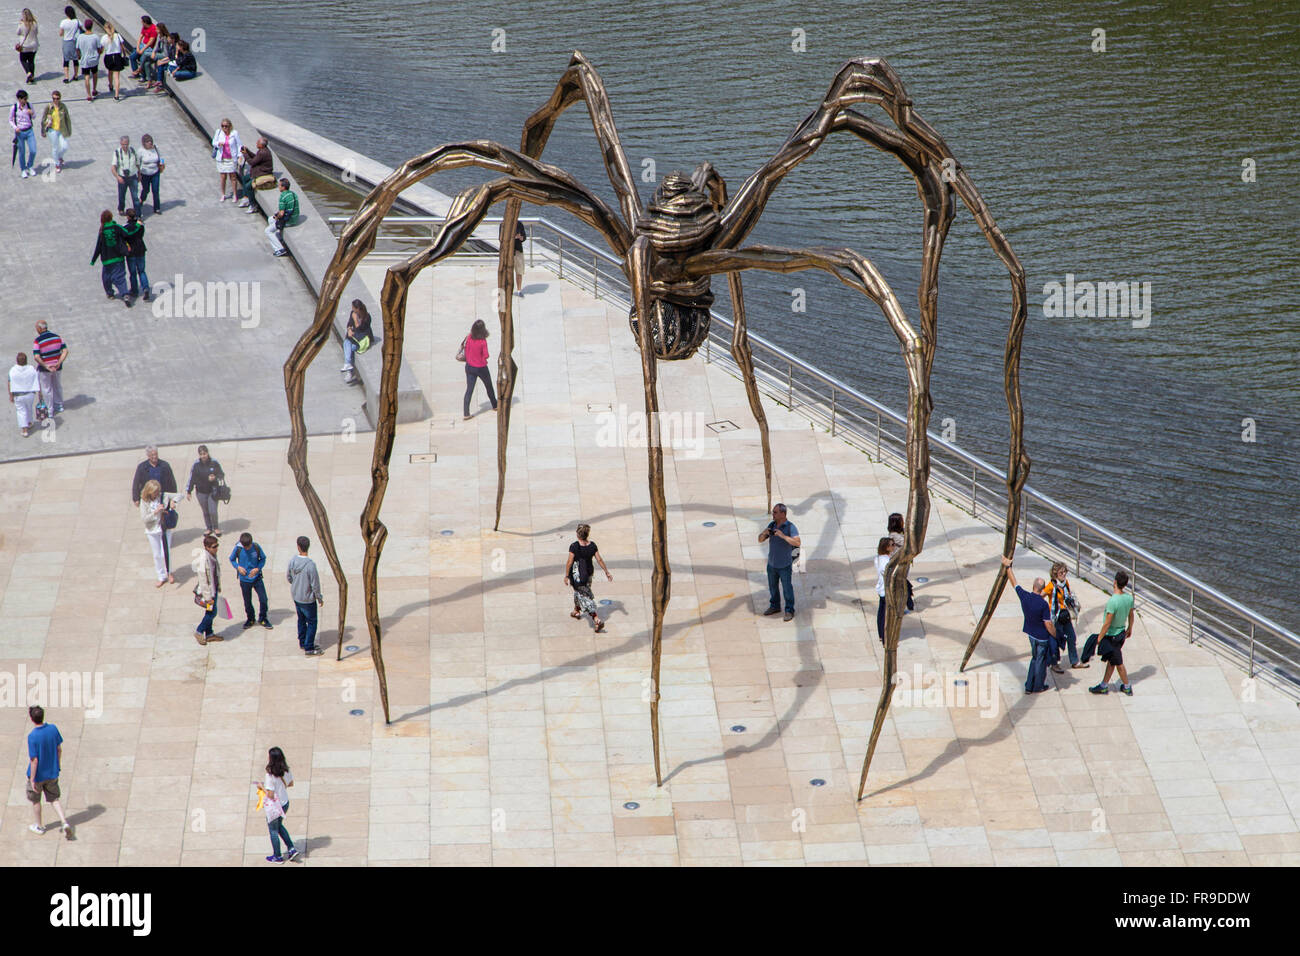 Sculpture d'araignée, créé par Louise Bourgeois en 1999, entre le Musée Guggenheim et la Nervion, Bilbao, Espagne. Banque D'Images